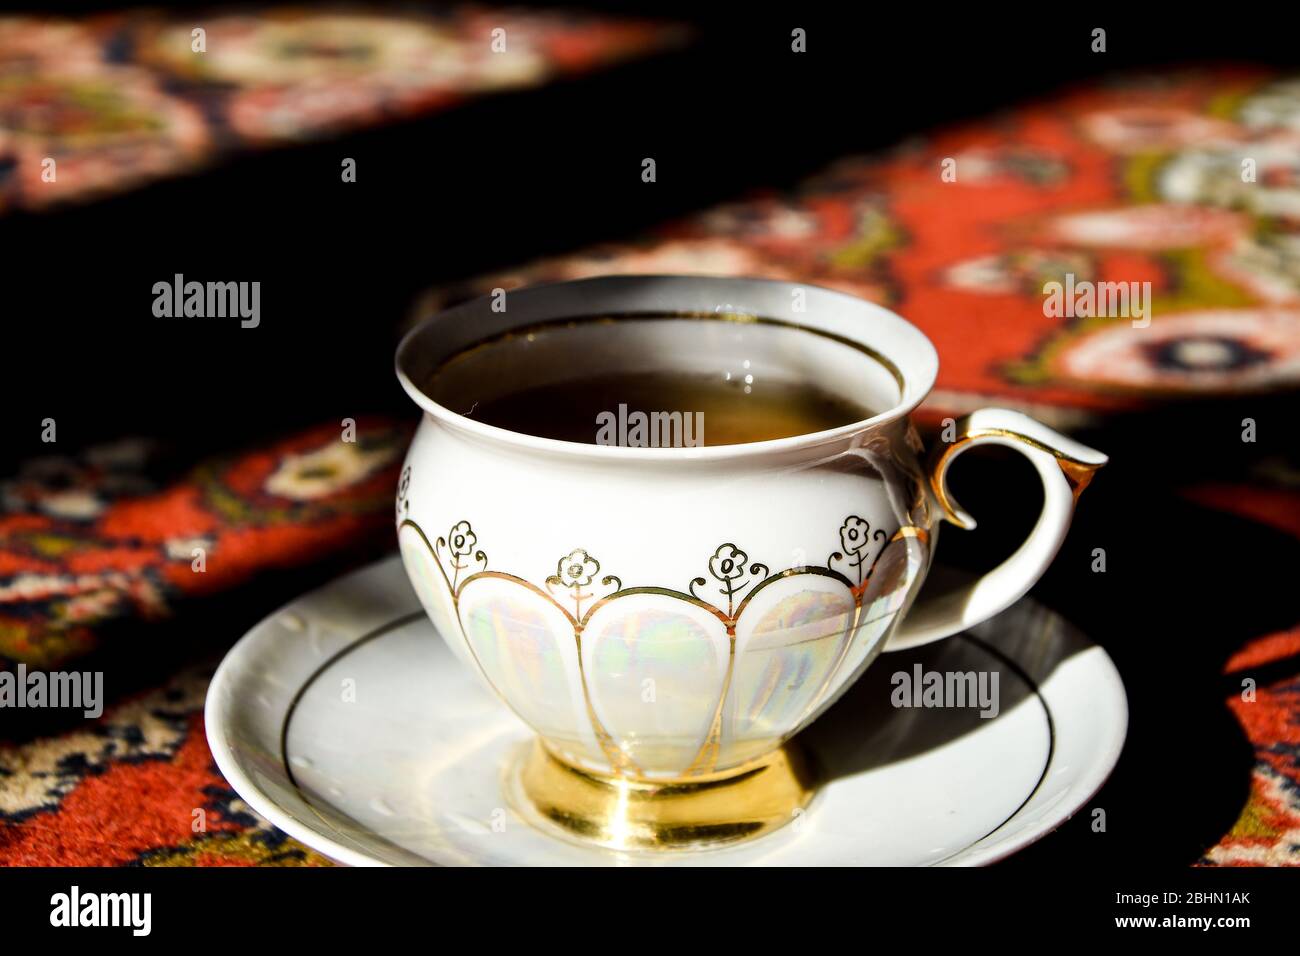 Vintage-Porzellan-Teezeit auf türkischem Teppich, schwarzer Tee mit Rauch  in einer chinesischen Tasse und Untertasse auf dem Sonnenlicht, heißer  Dampf Stockfotografie - Alamy